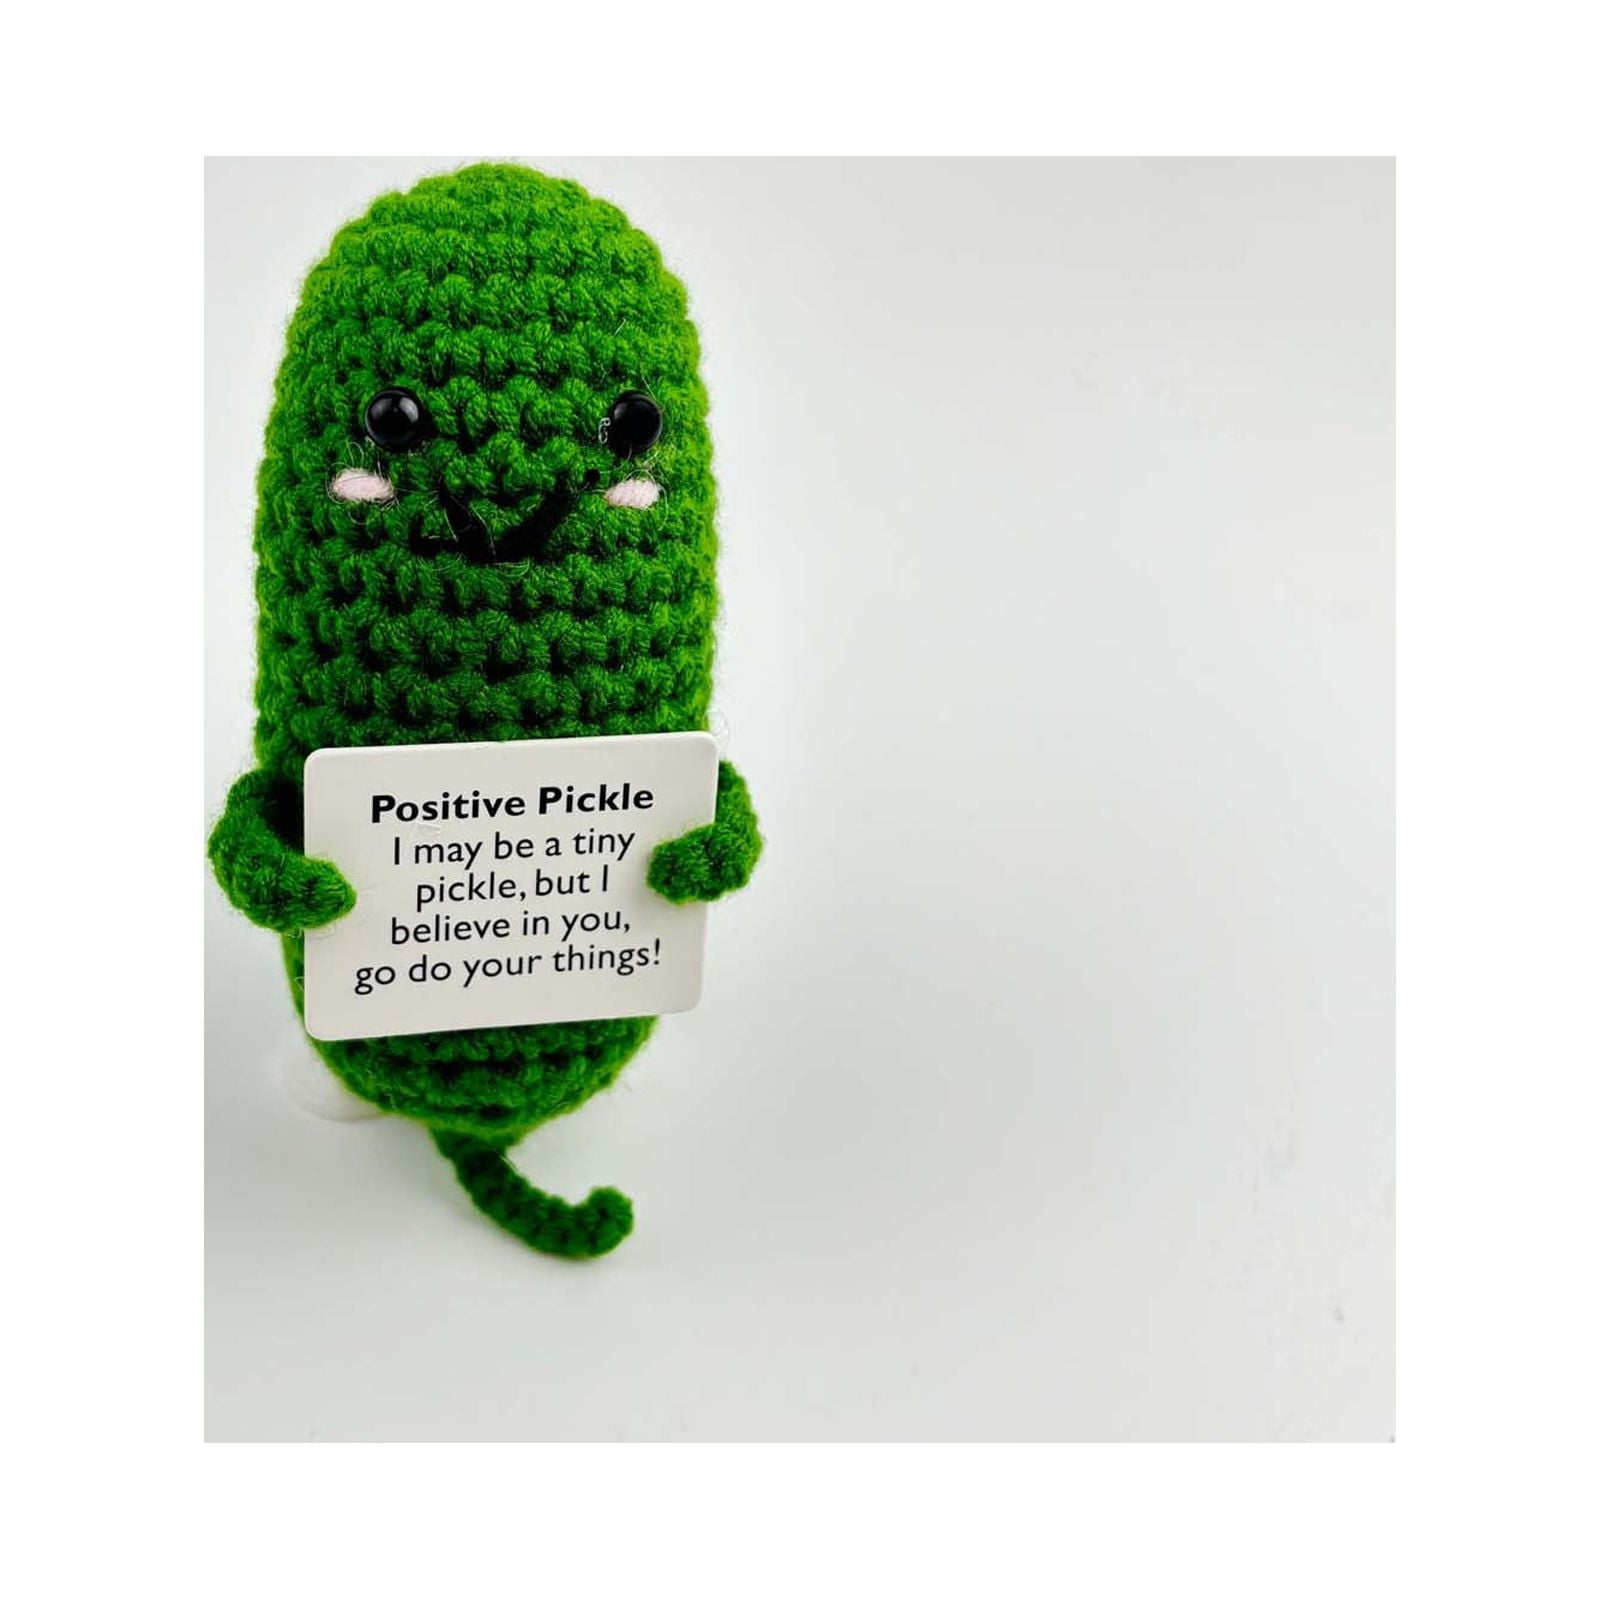 1pc Handmade Emotional Support Pickles Gift, Handmade Crochet